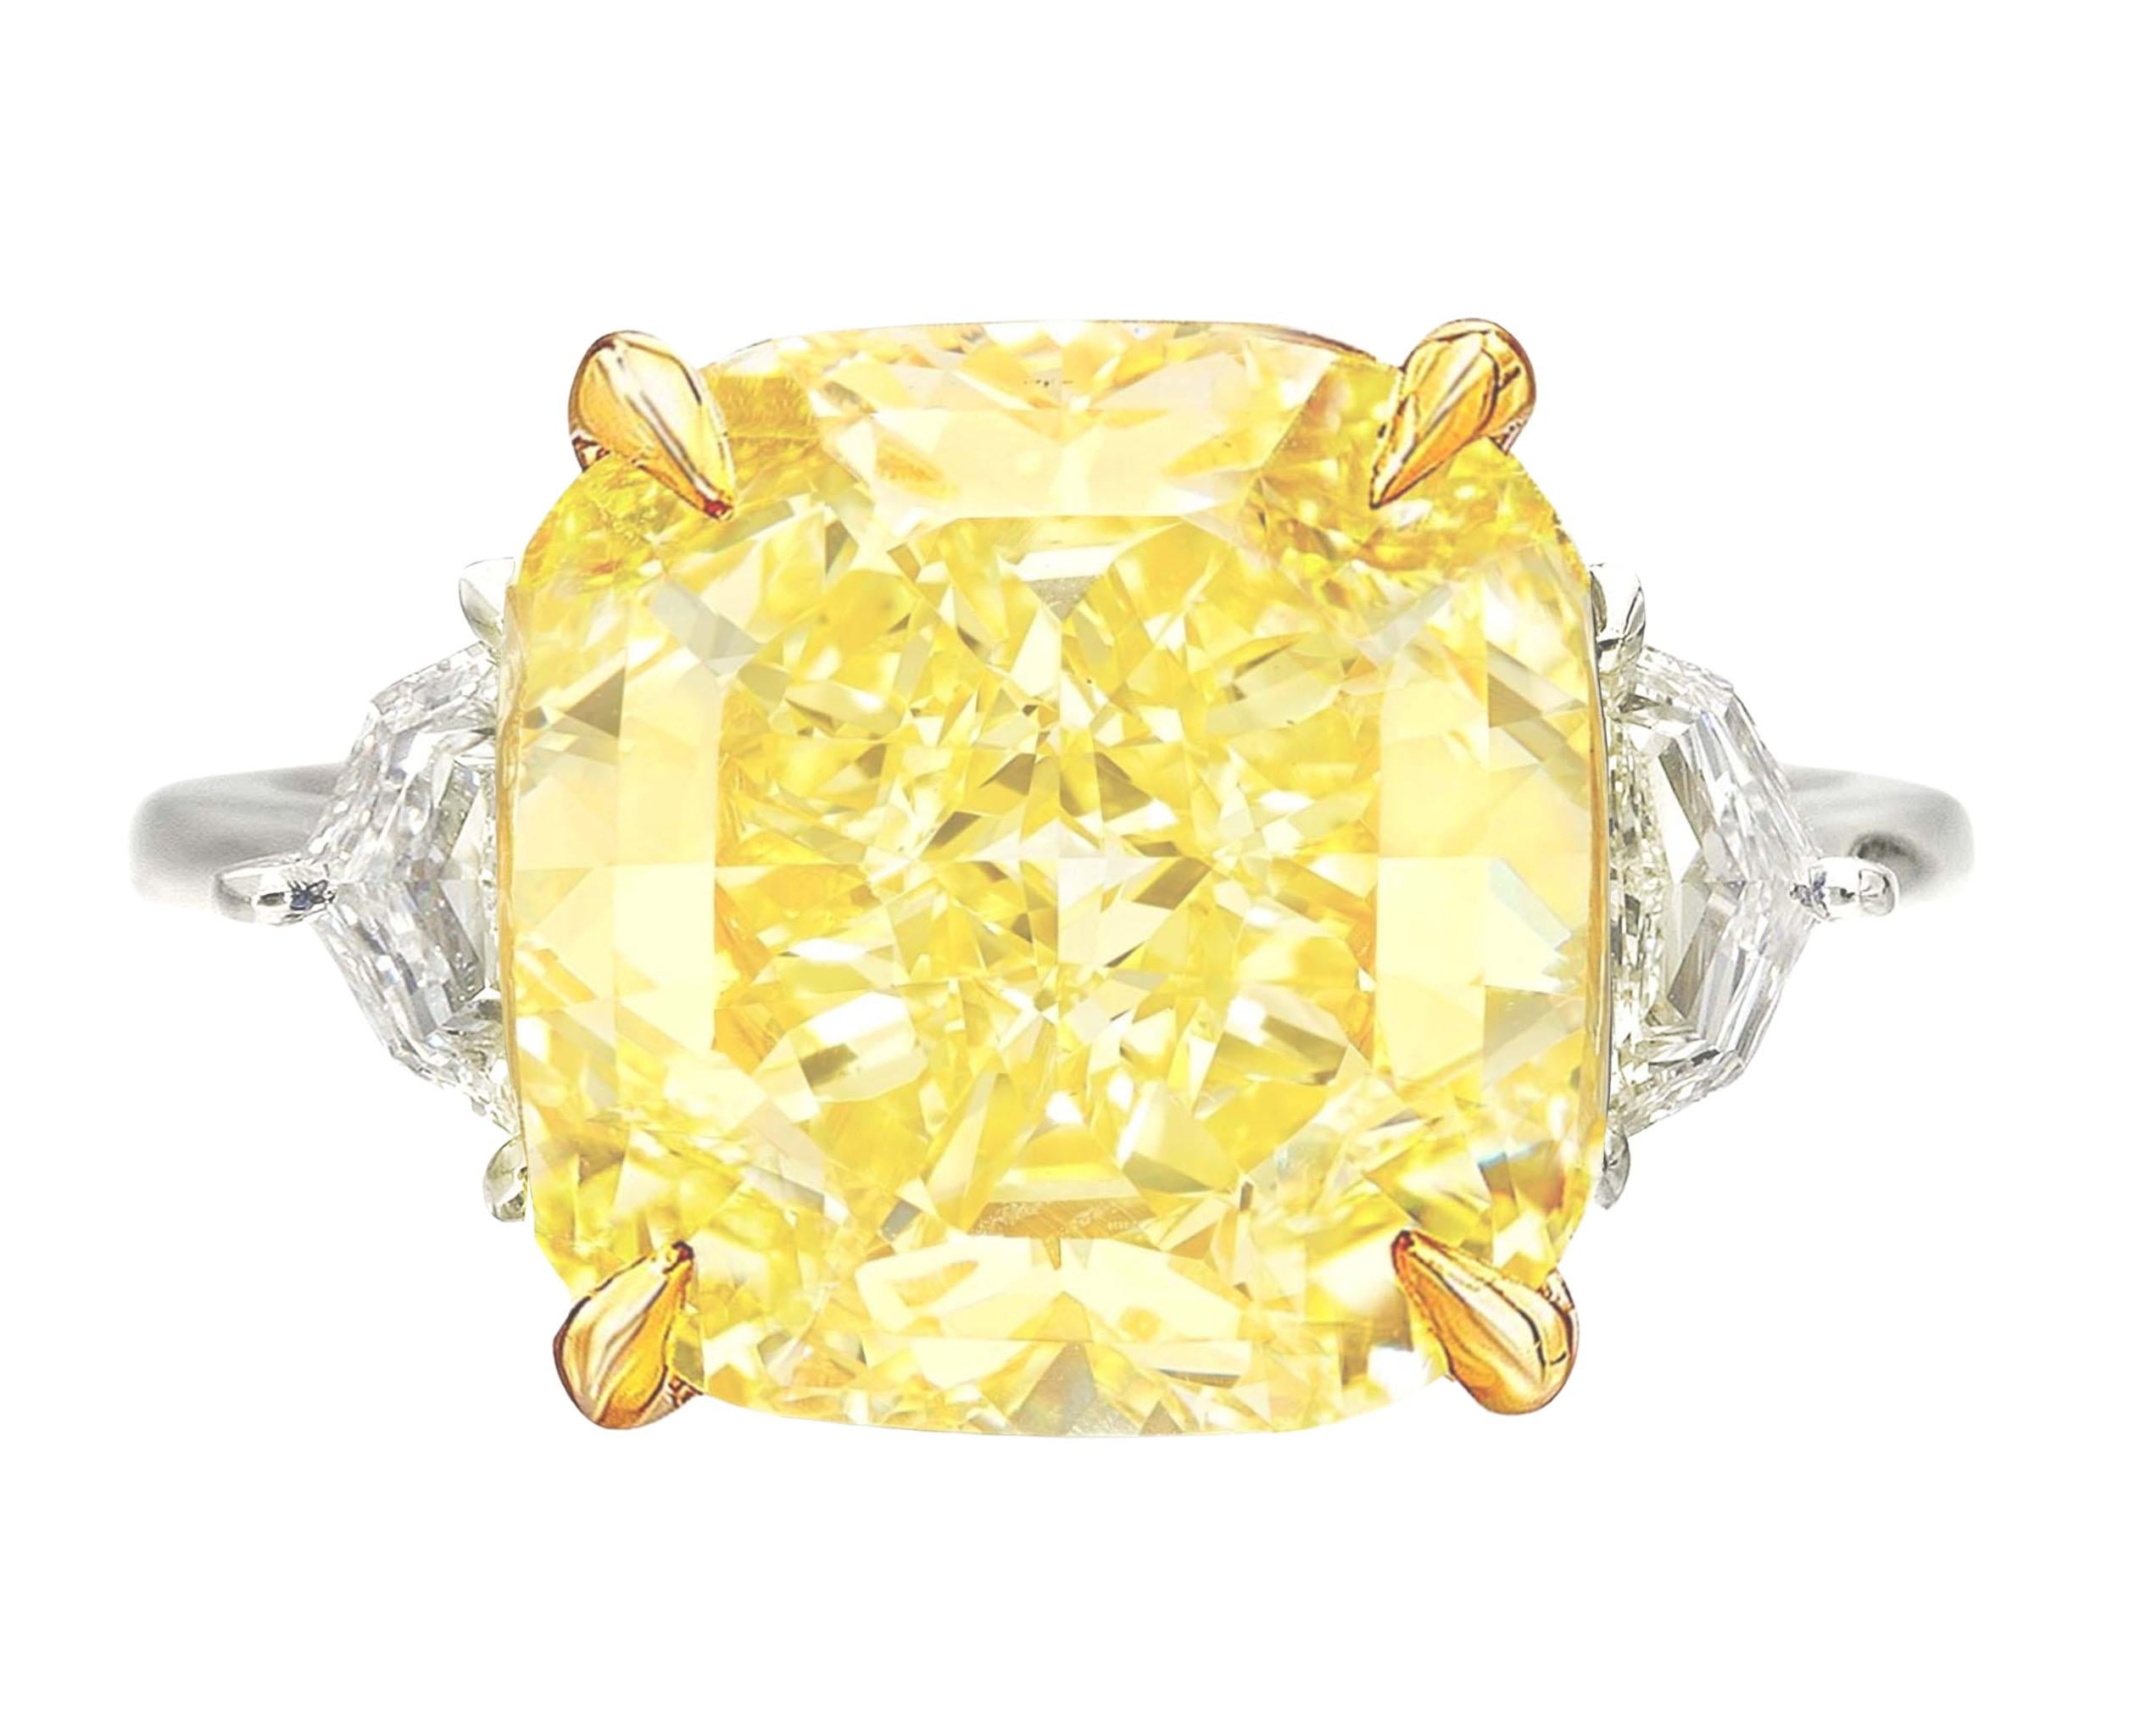 Bague en diamant certifié GIA de 10 carats, taille coussin, de couleur jaune fantaisie